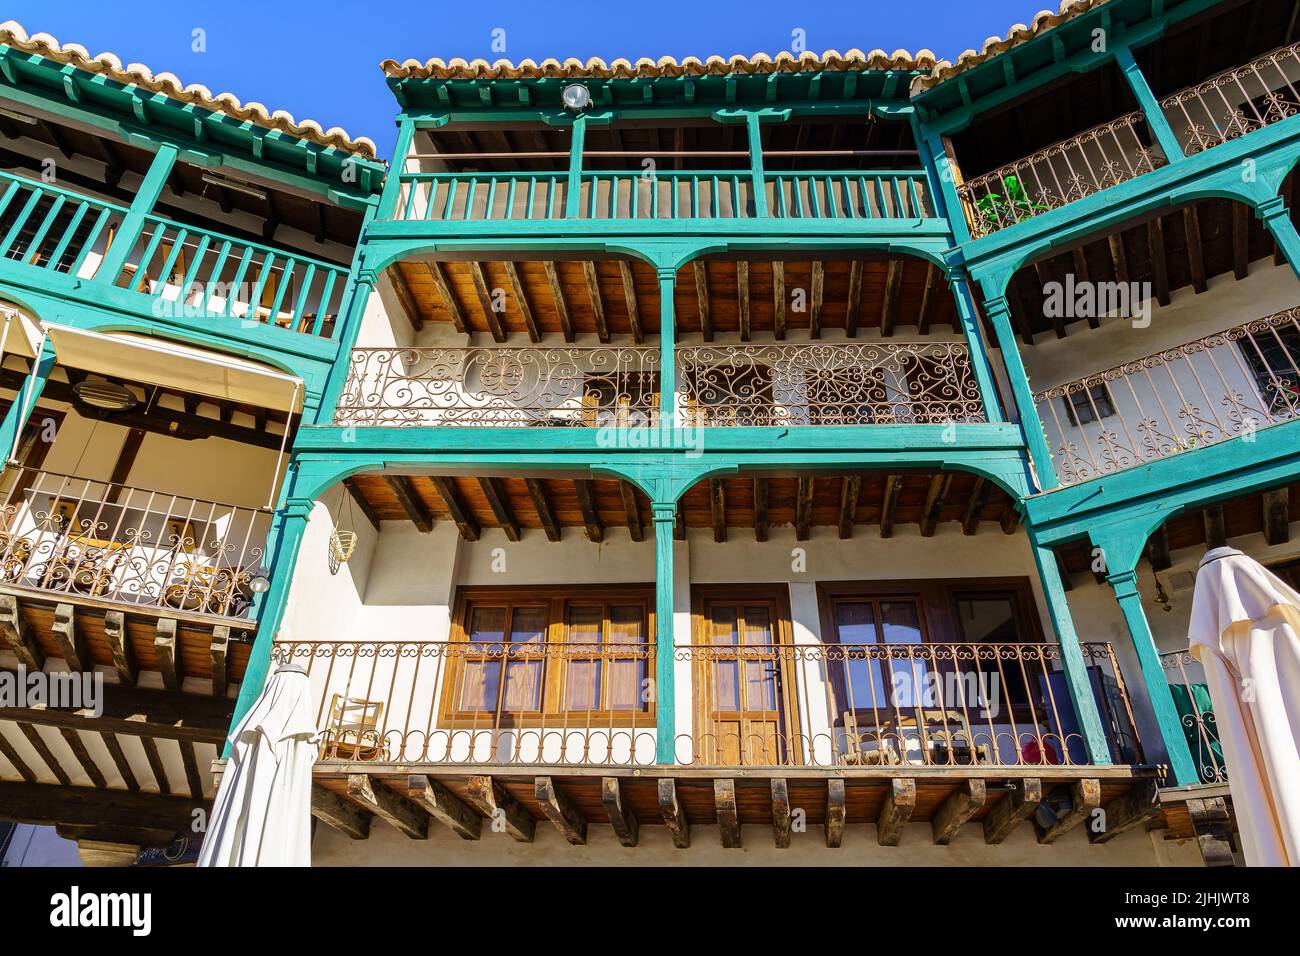 Tipici balconi nella piazza centrale di Chinchon a Madrid, vecchi balconi in legno in tutte le case. Spagna. Foto Stock